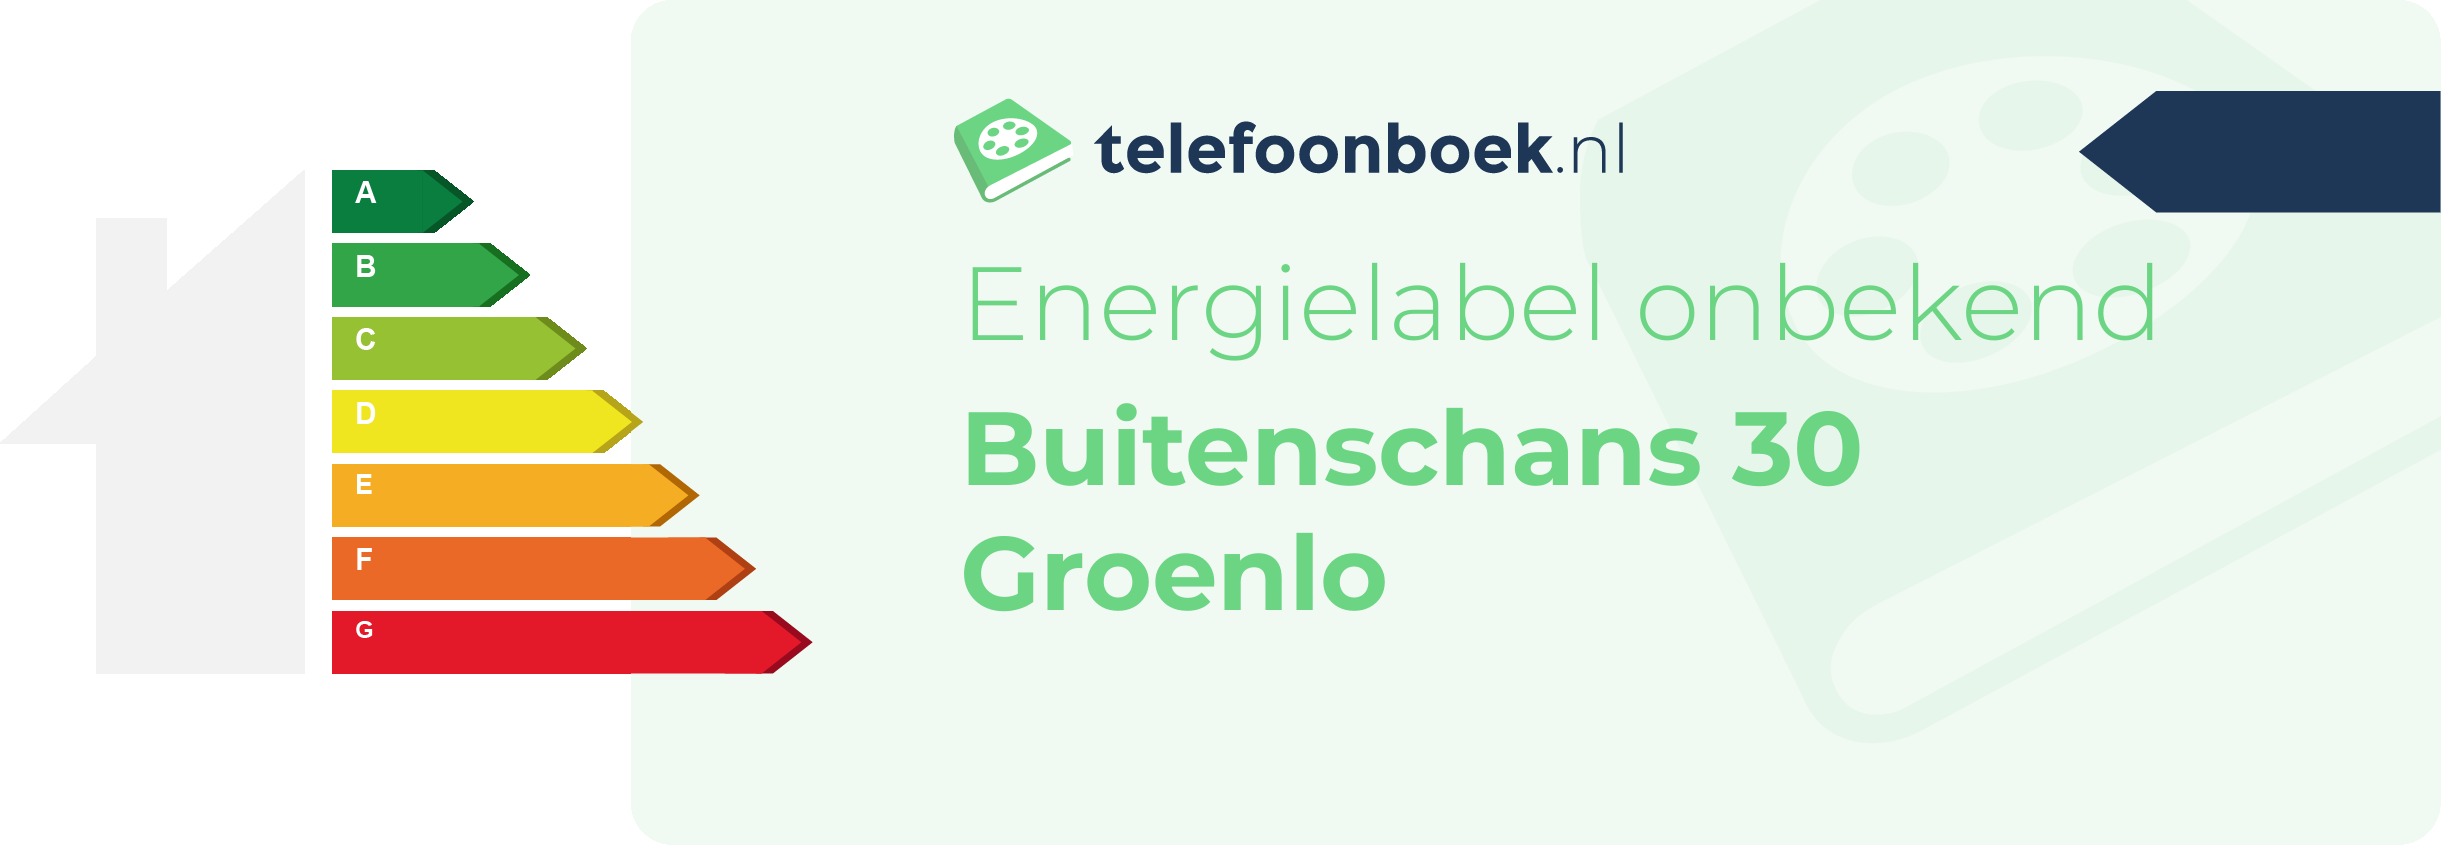 Energielabel Buitenschans 30 Groenlo